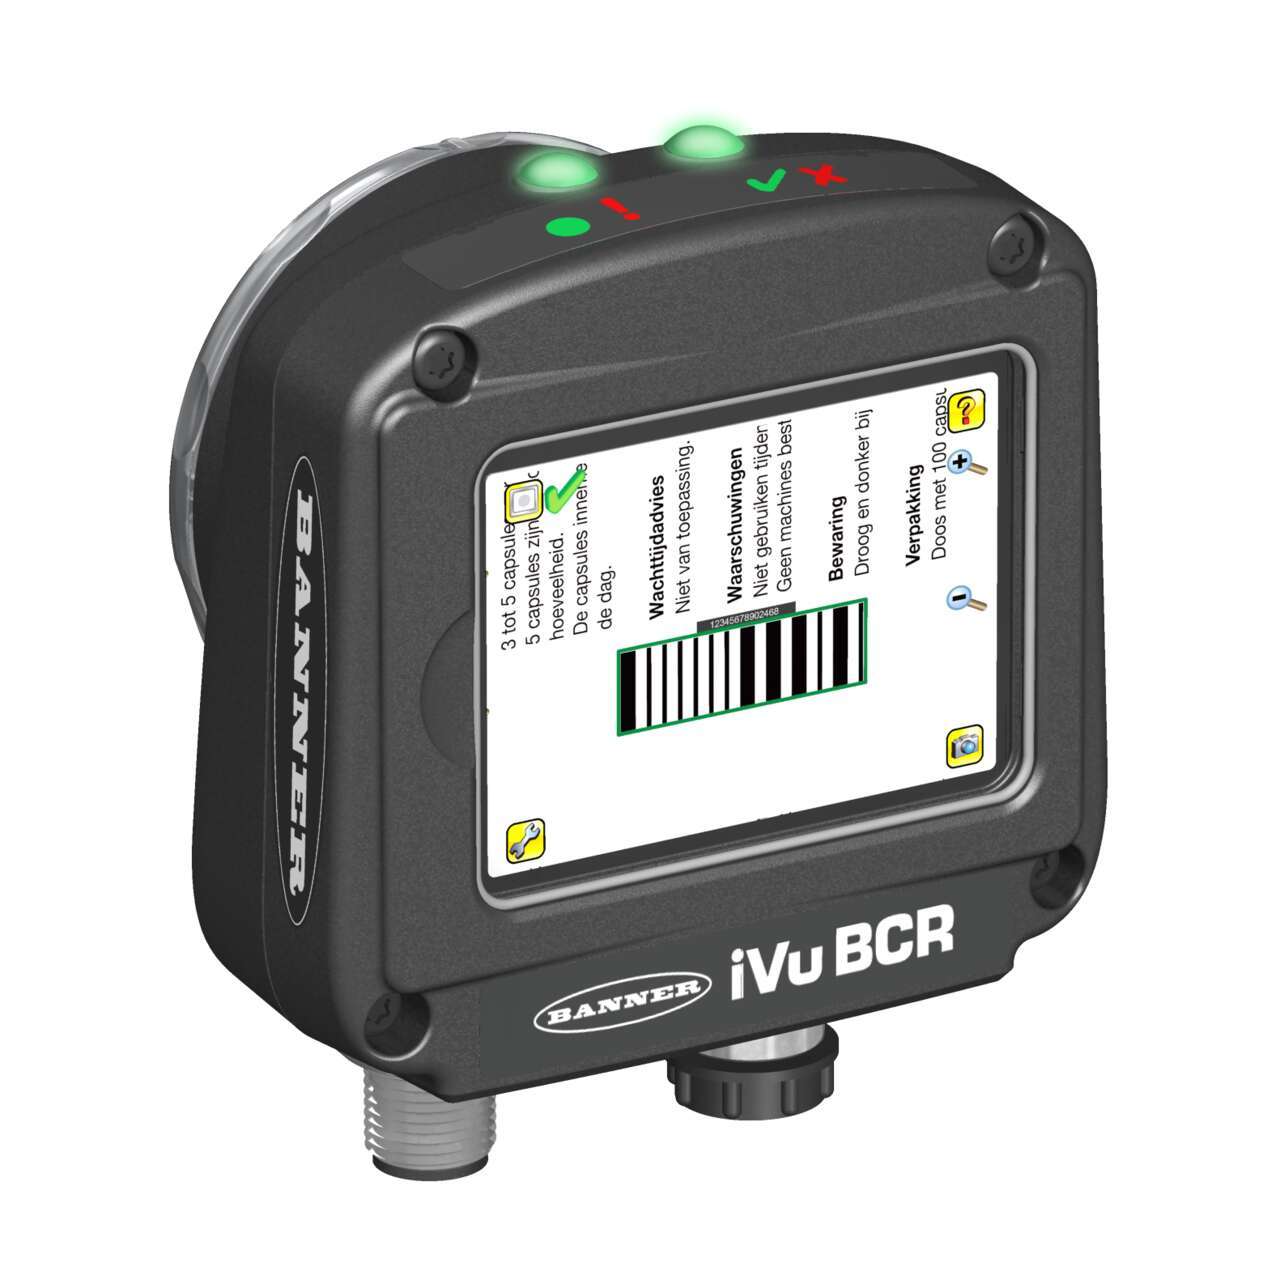 iVu BCR imager-based barcode reader